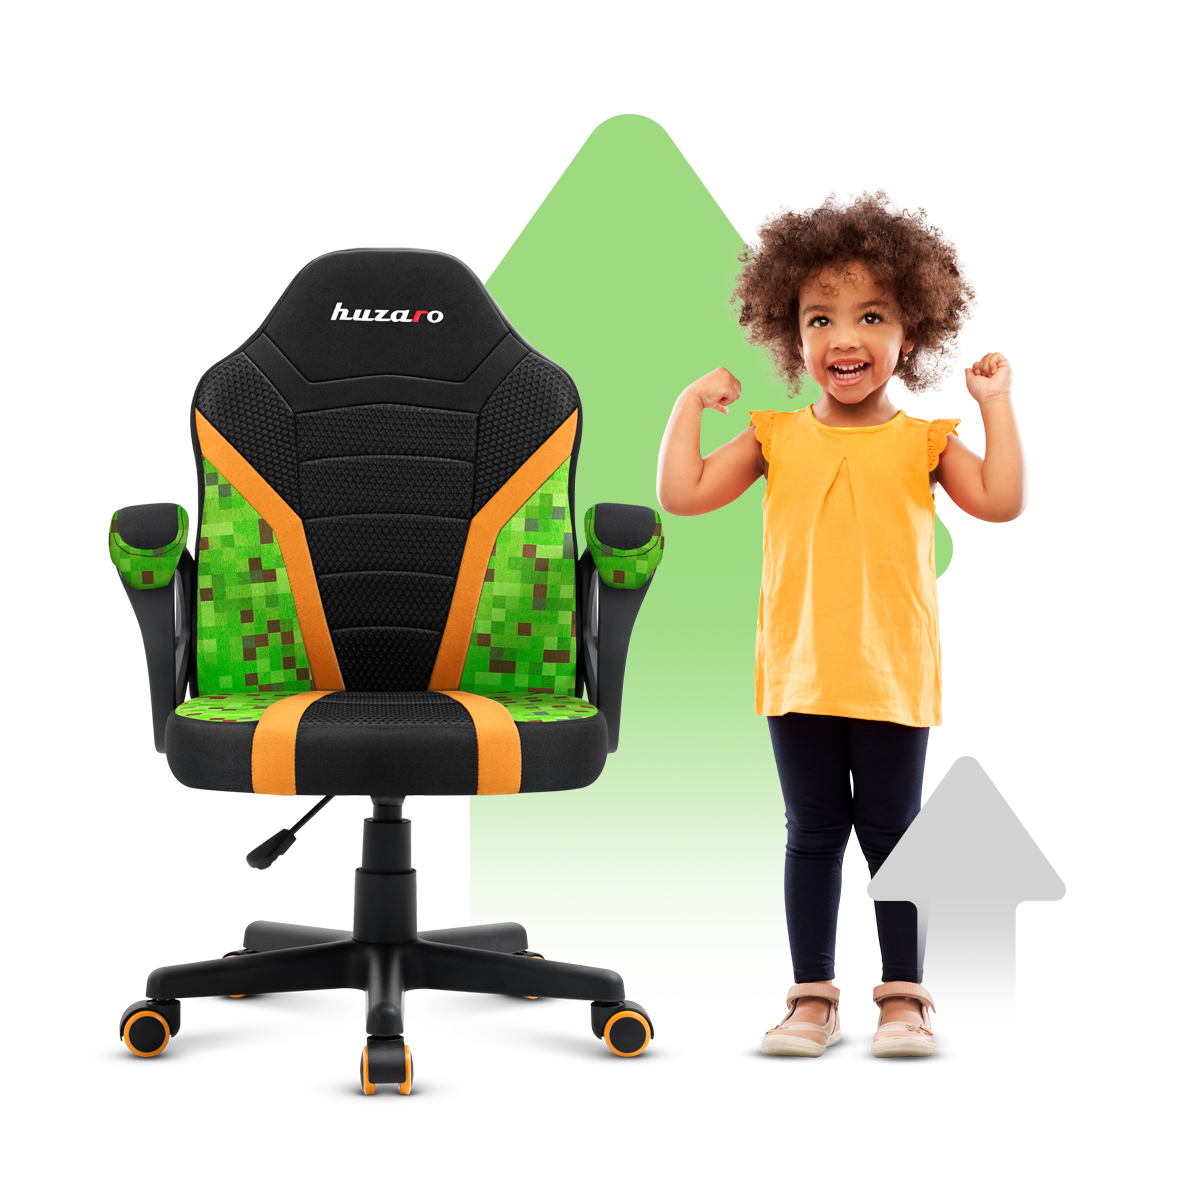 Przód fotela gamingowego dla dziecka Huzaro Ranger 1.0 pixel